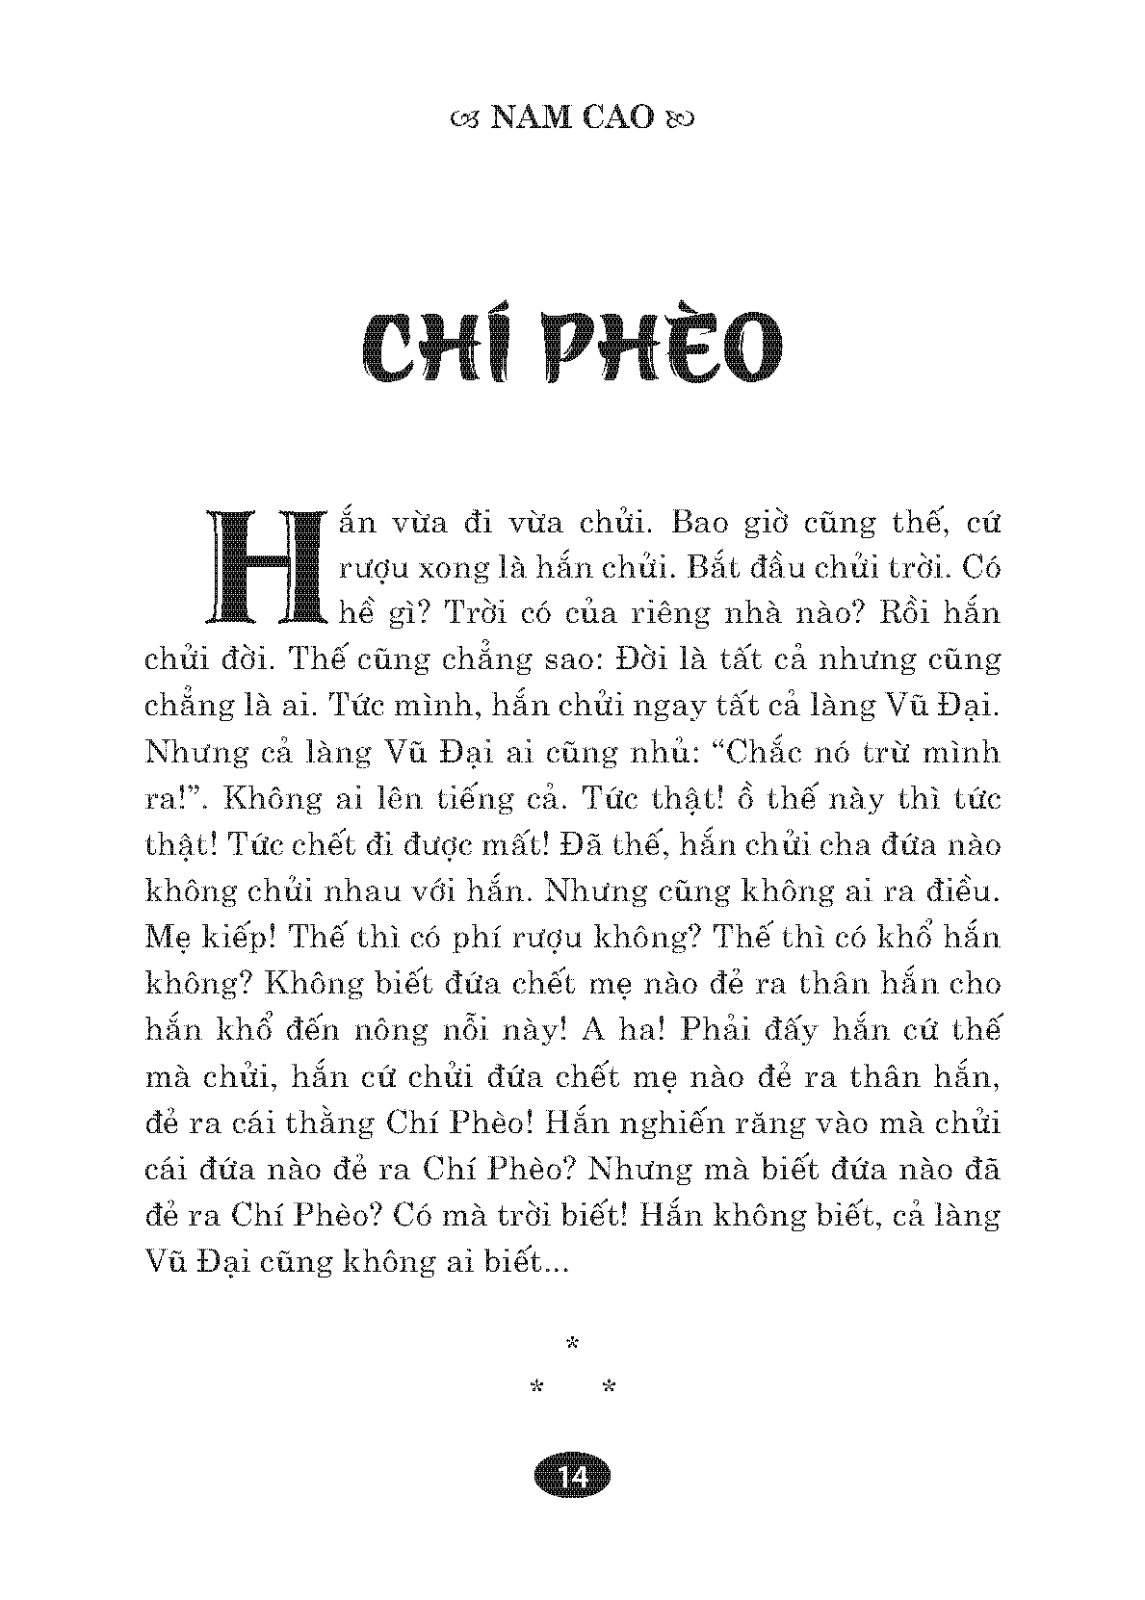  Tinh Hoa Văn Học Việt Nam - Chí Phèo, Sống Mòn 